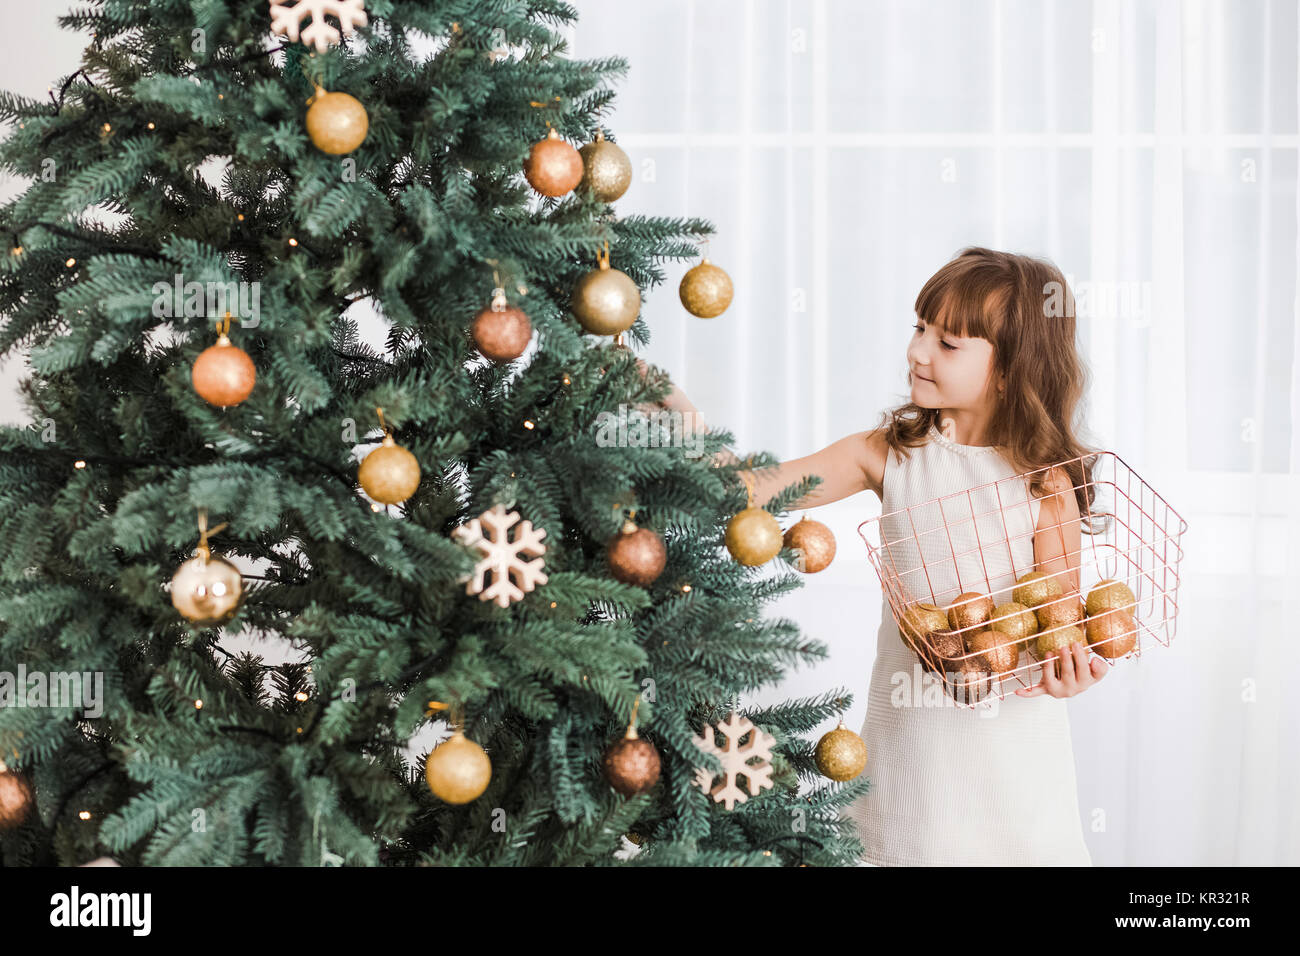 Schöne Mädchen zieren riesige grüne Weihnachtsbaum für Urlaub Feier. Horizontale Farbfotografie. Stockfoto